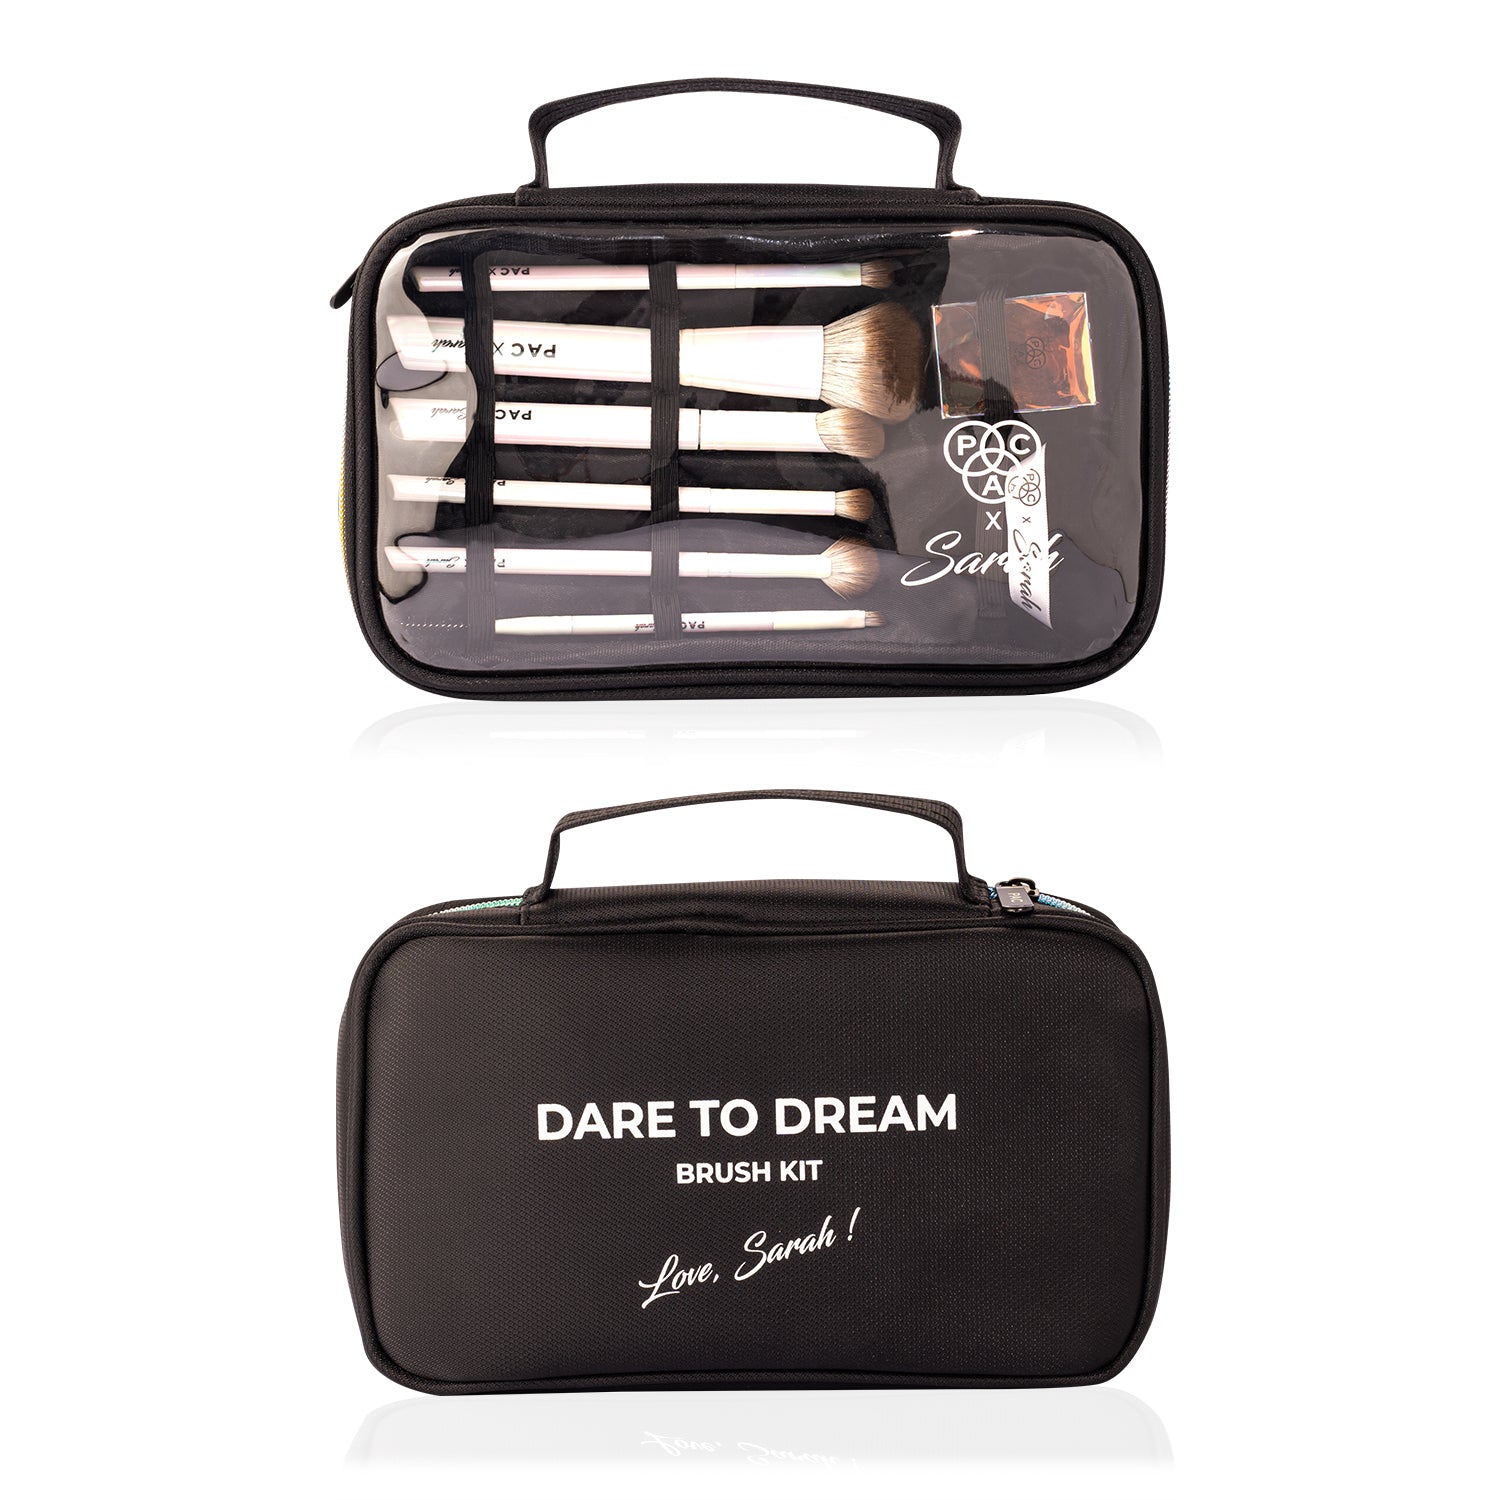 PAC X Sarah Dare to Dream Brush Kit